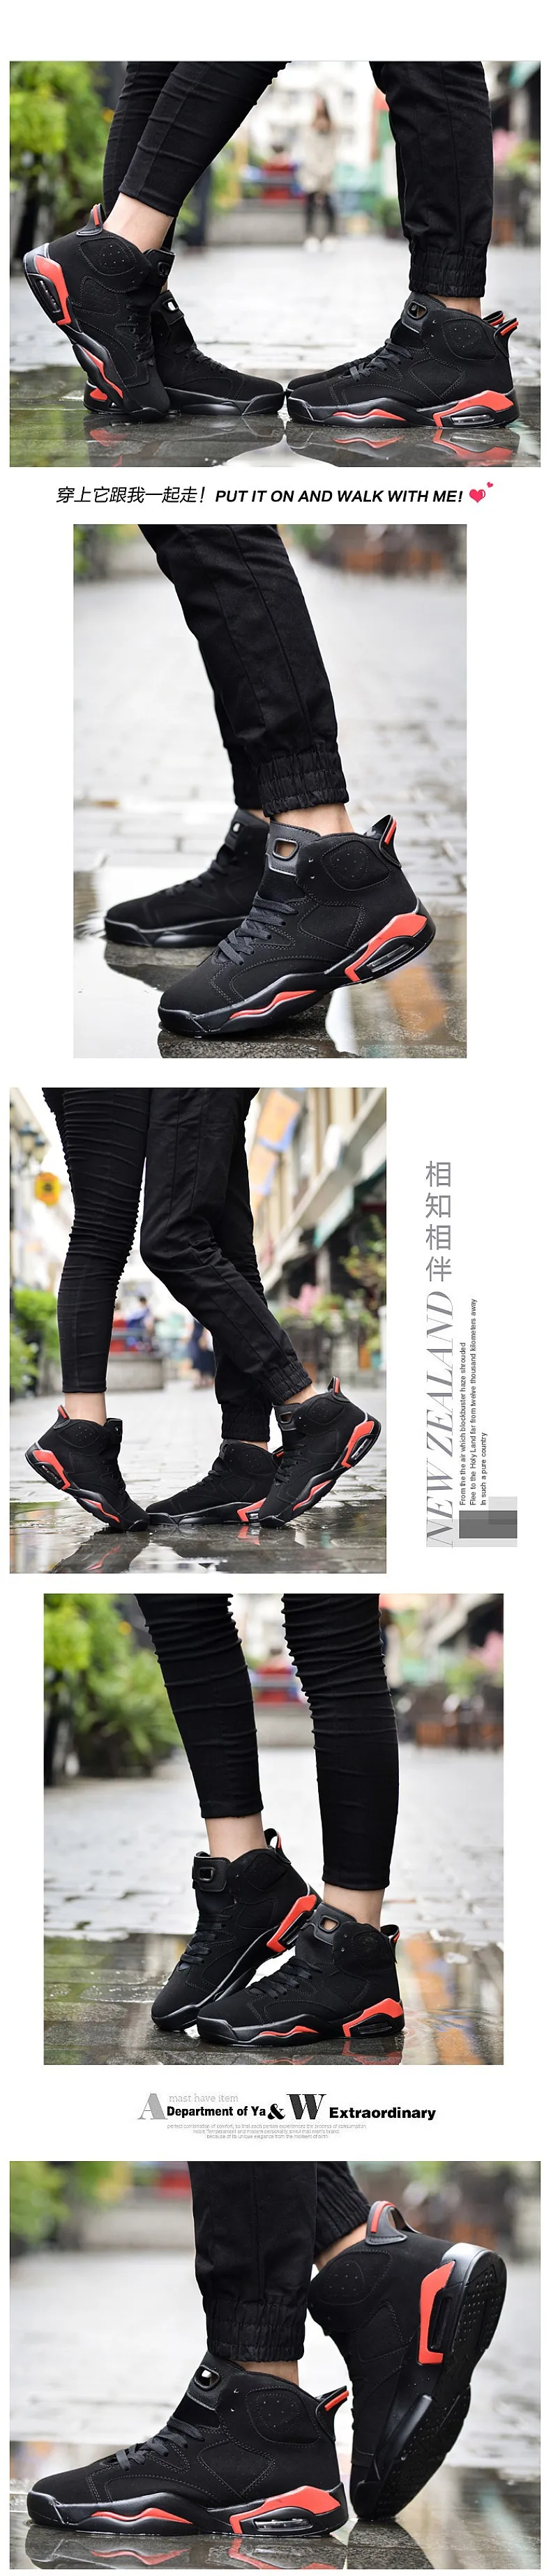 Для мужчин и Для женщин Air Баскетбольные кеды нейтральный открытый Спортивная обувь кемпинг тренер Водонепроницаемый обувь на воздушной подушке Высокие сапоги Zapatos